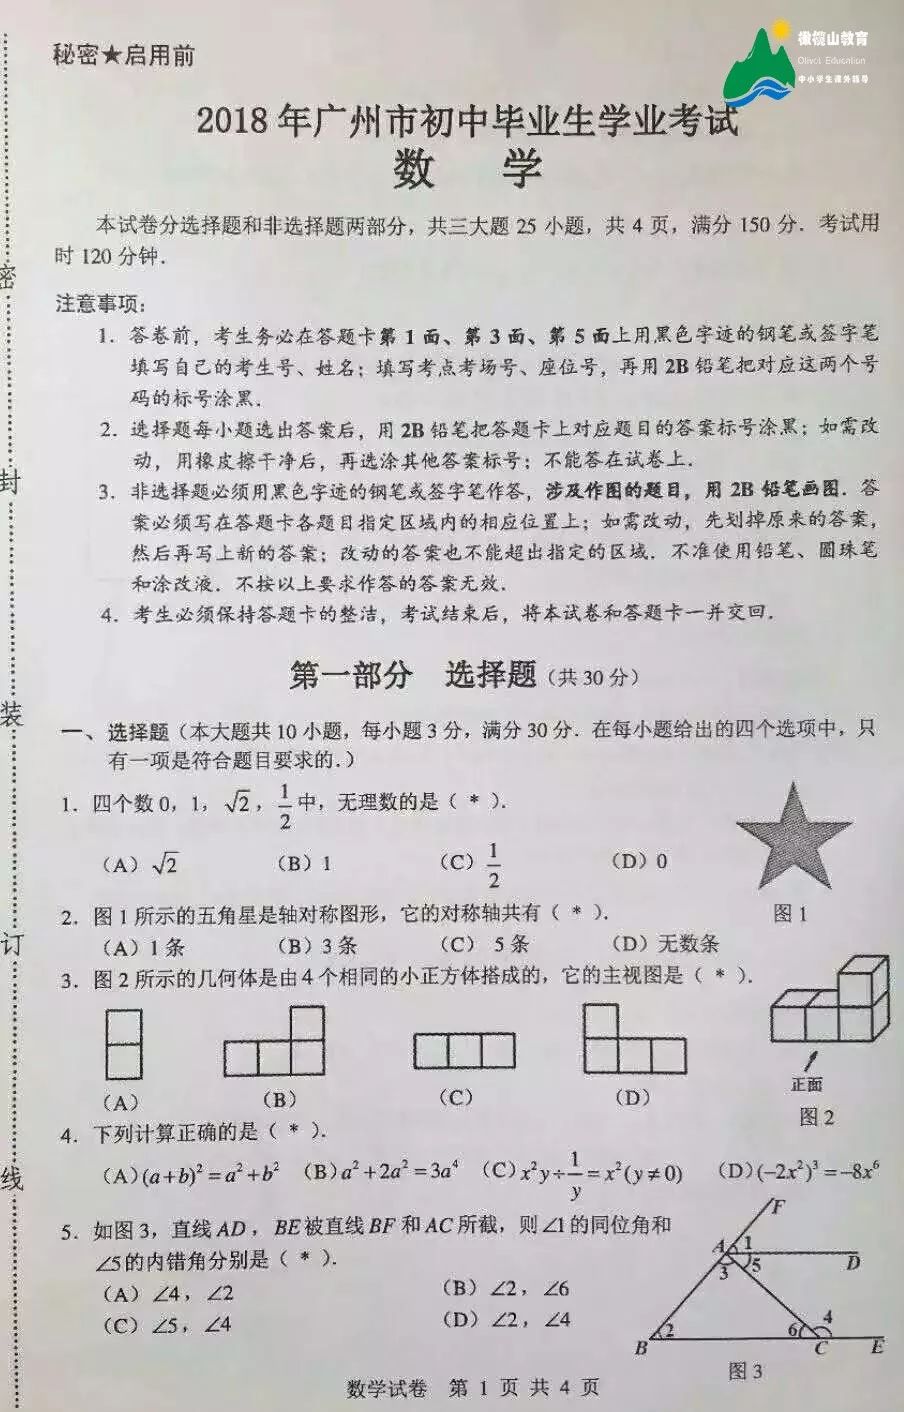 重磅!2018年广州中考数学最全评析及考点分布